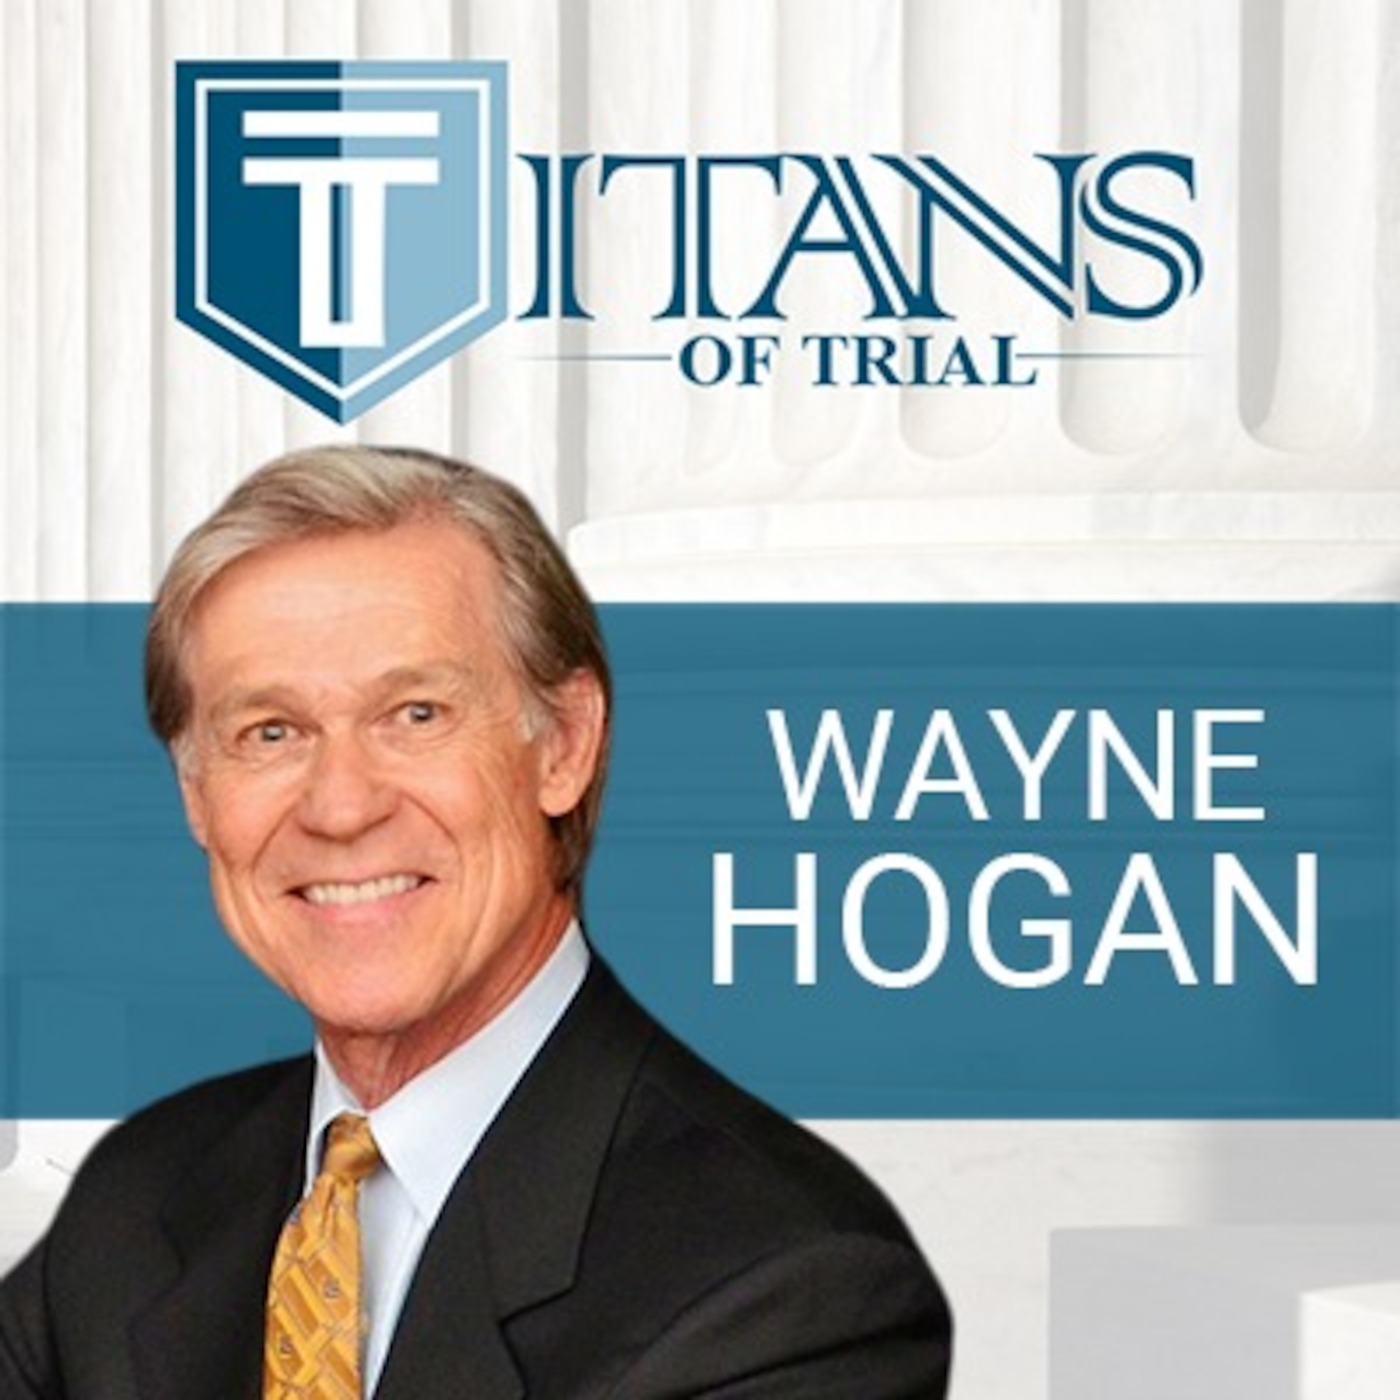 Titans of Trial - Wayne Hogan